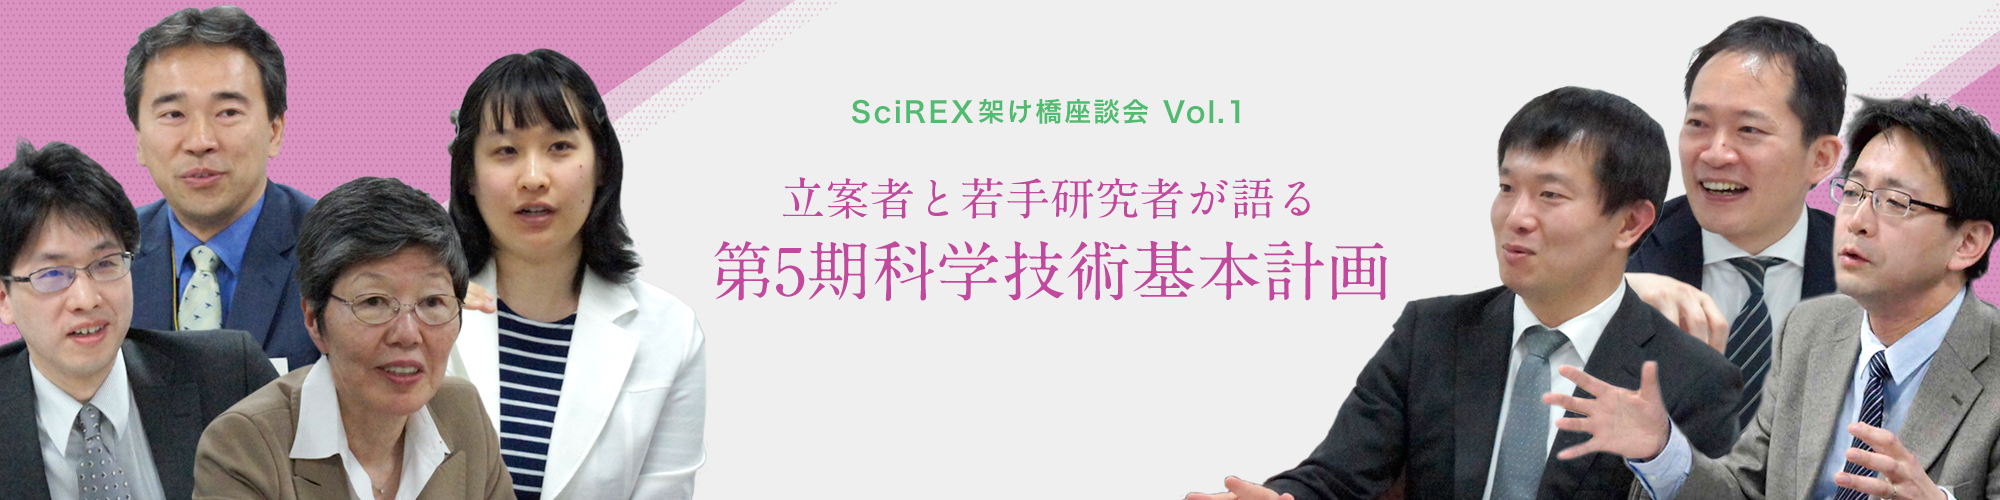 SciREX 架け橋座談会 Vol.1　立案者と若手研究者が語る 「第5期科学技術基本計画」